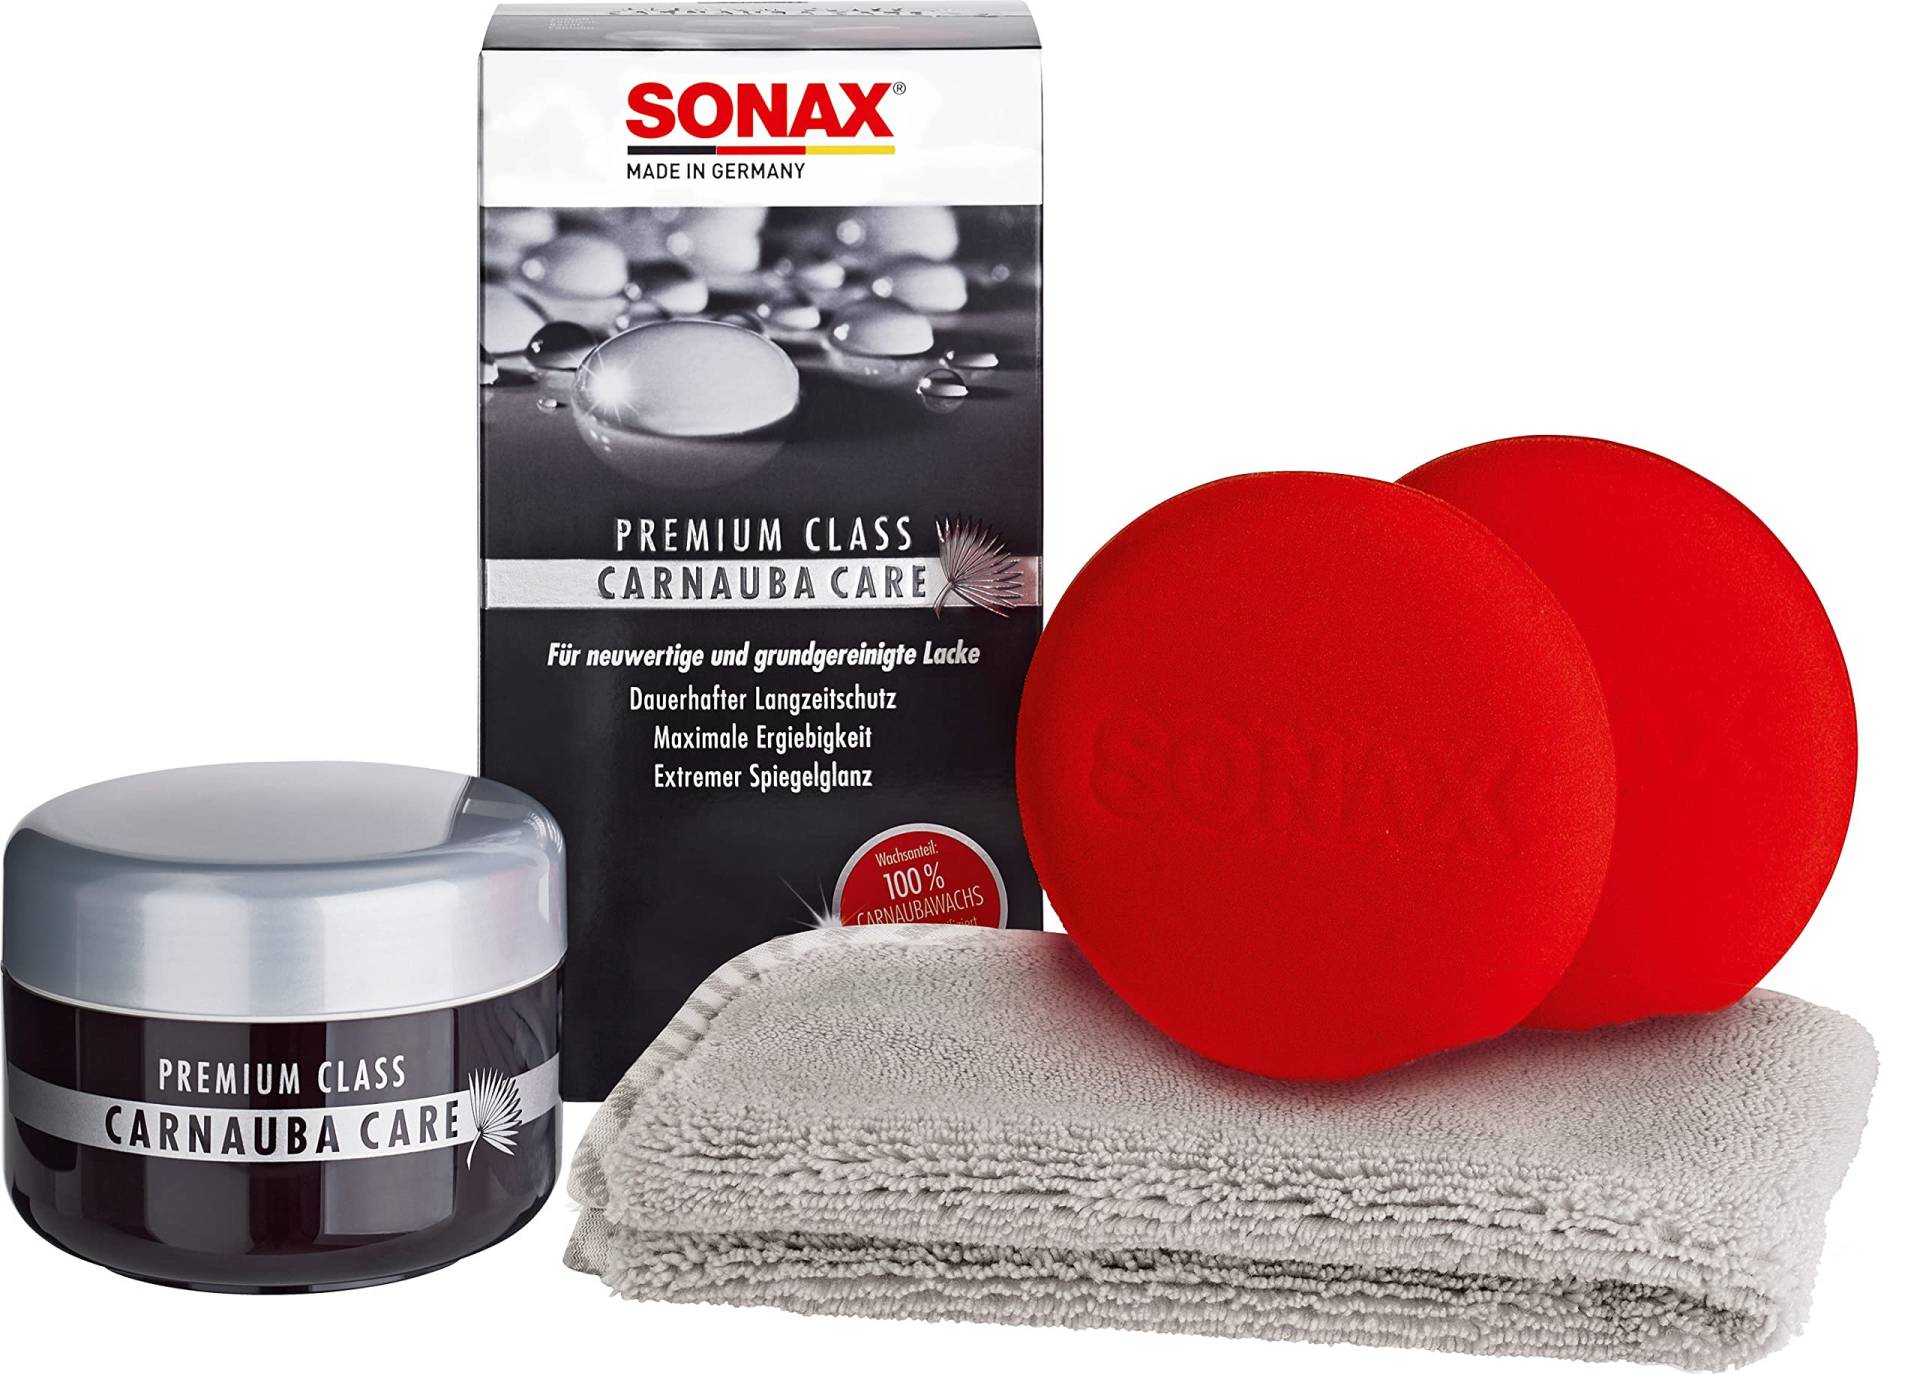 SONAX PREMIUM CLASS Carnauba Care (200 ml) 100% Carnaubawachs für alle neuen & grundgereinigten Lacke inkl. 2x Schwamm & 1x MicrofaserTuch | Art-Nr. 02112000 von SONAX